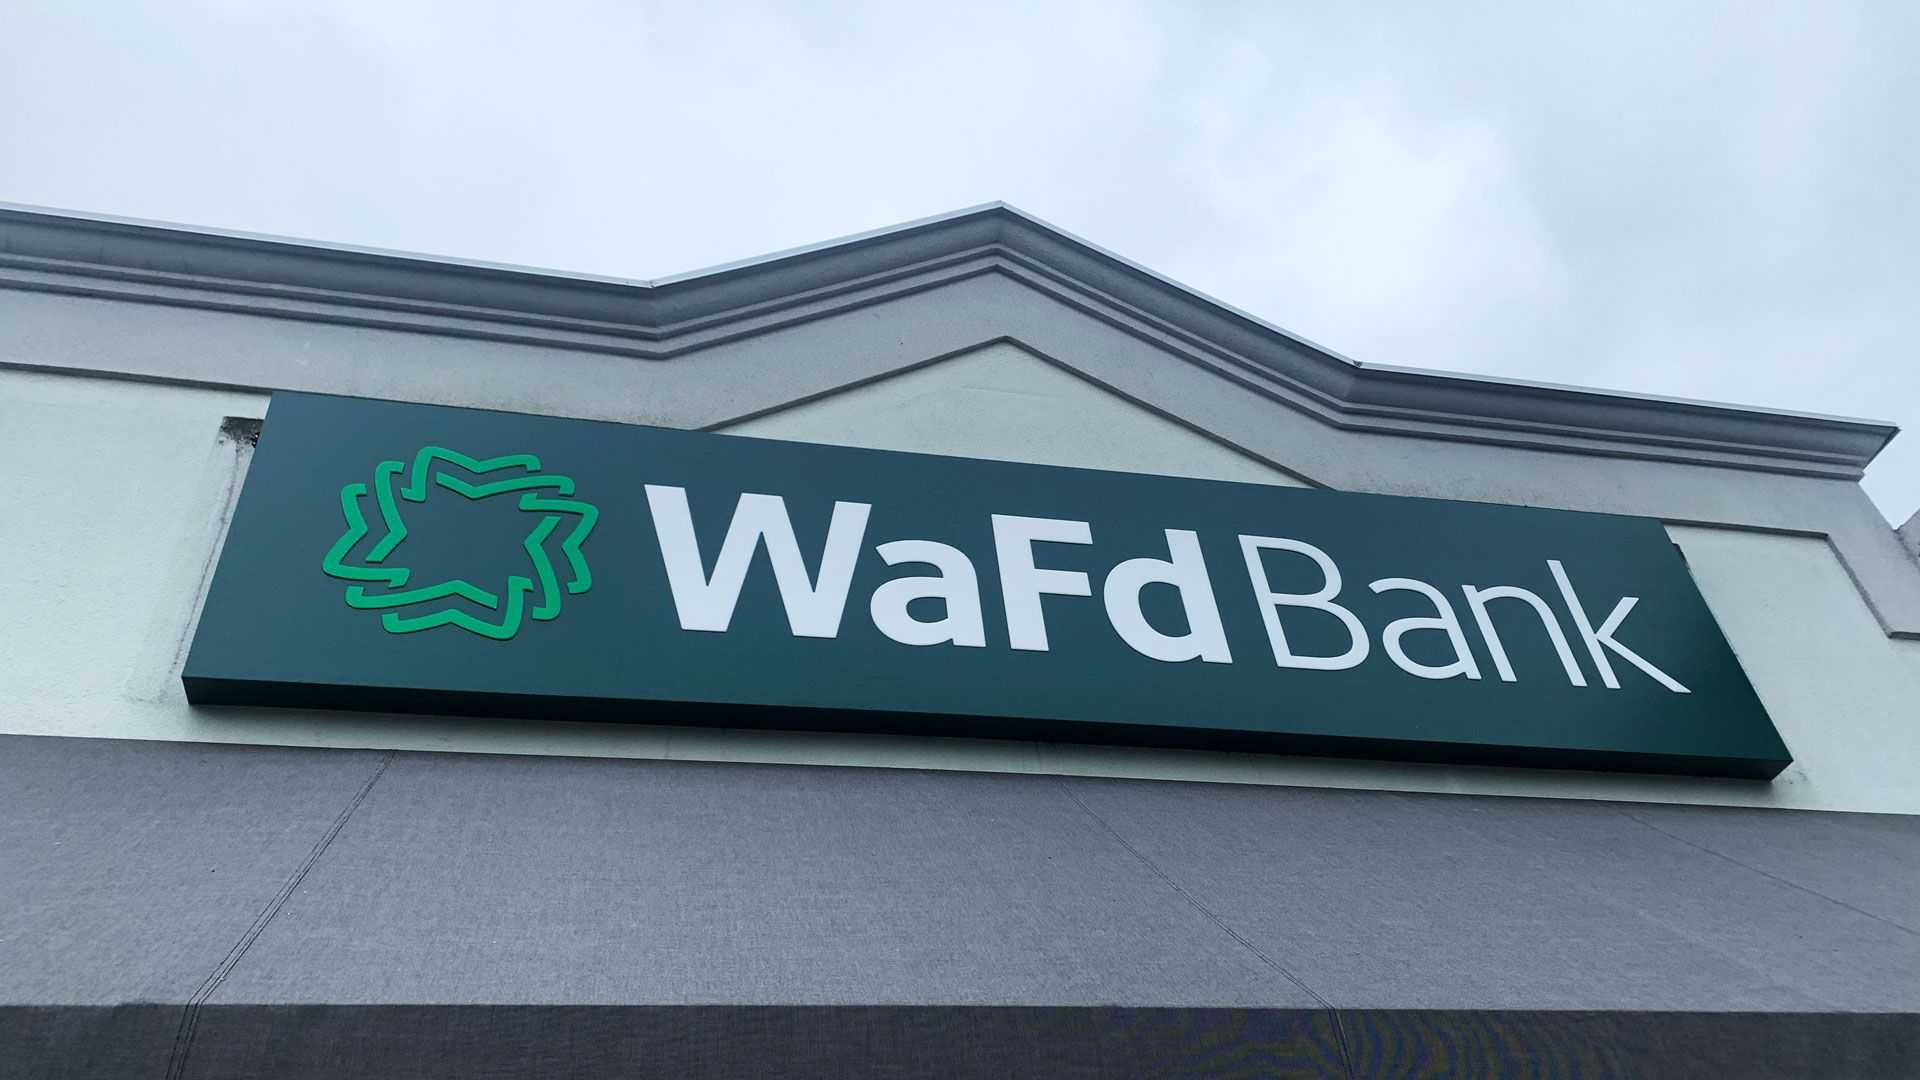 WaFd Bank in Gresham, Oregon #1121 - Washington Federal.